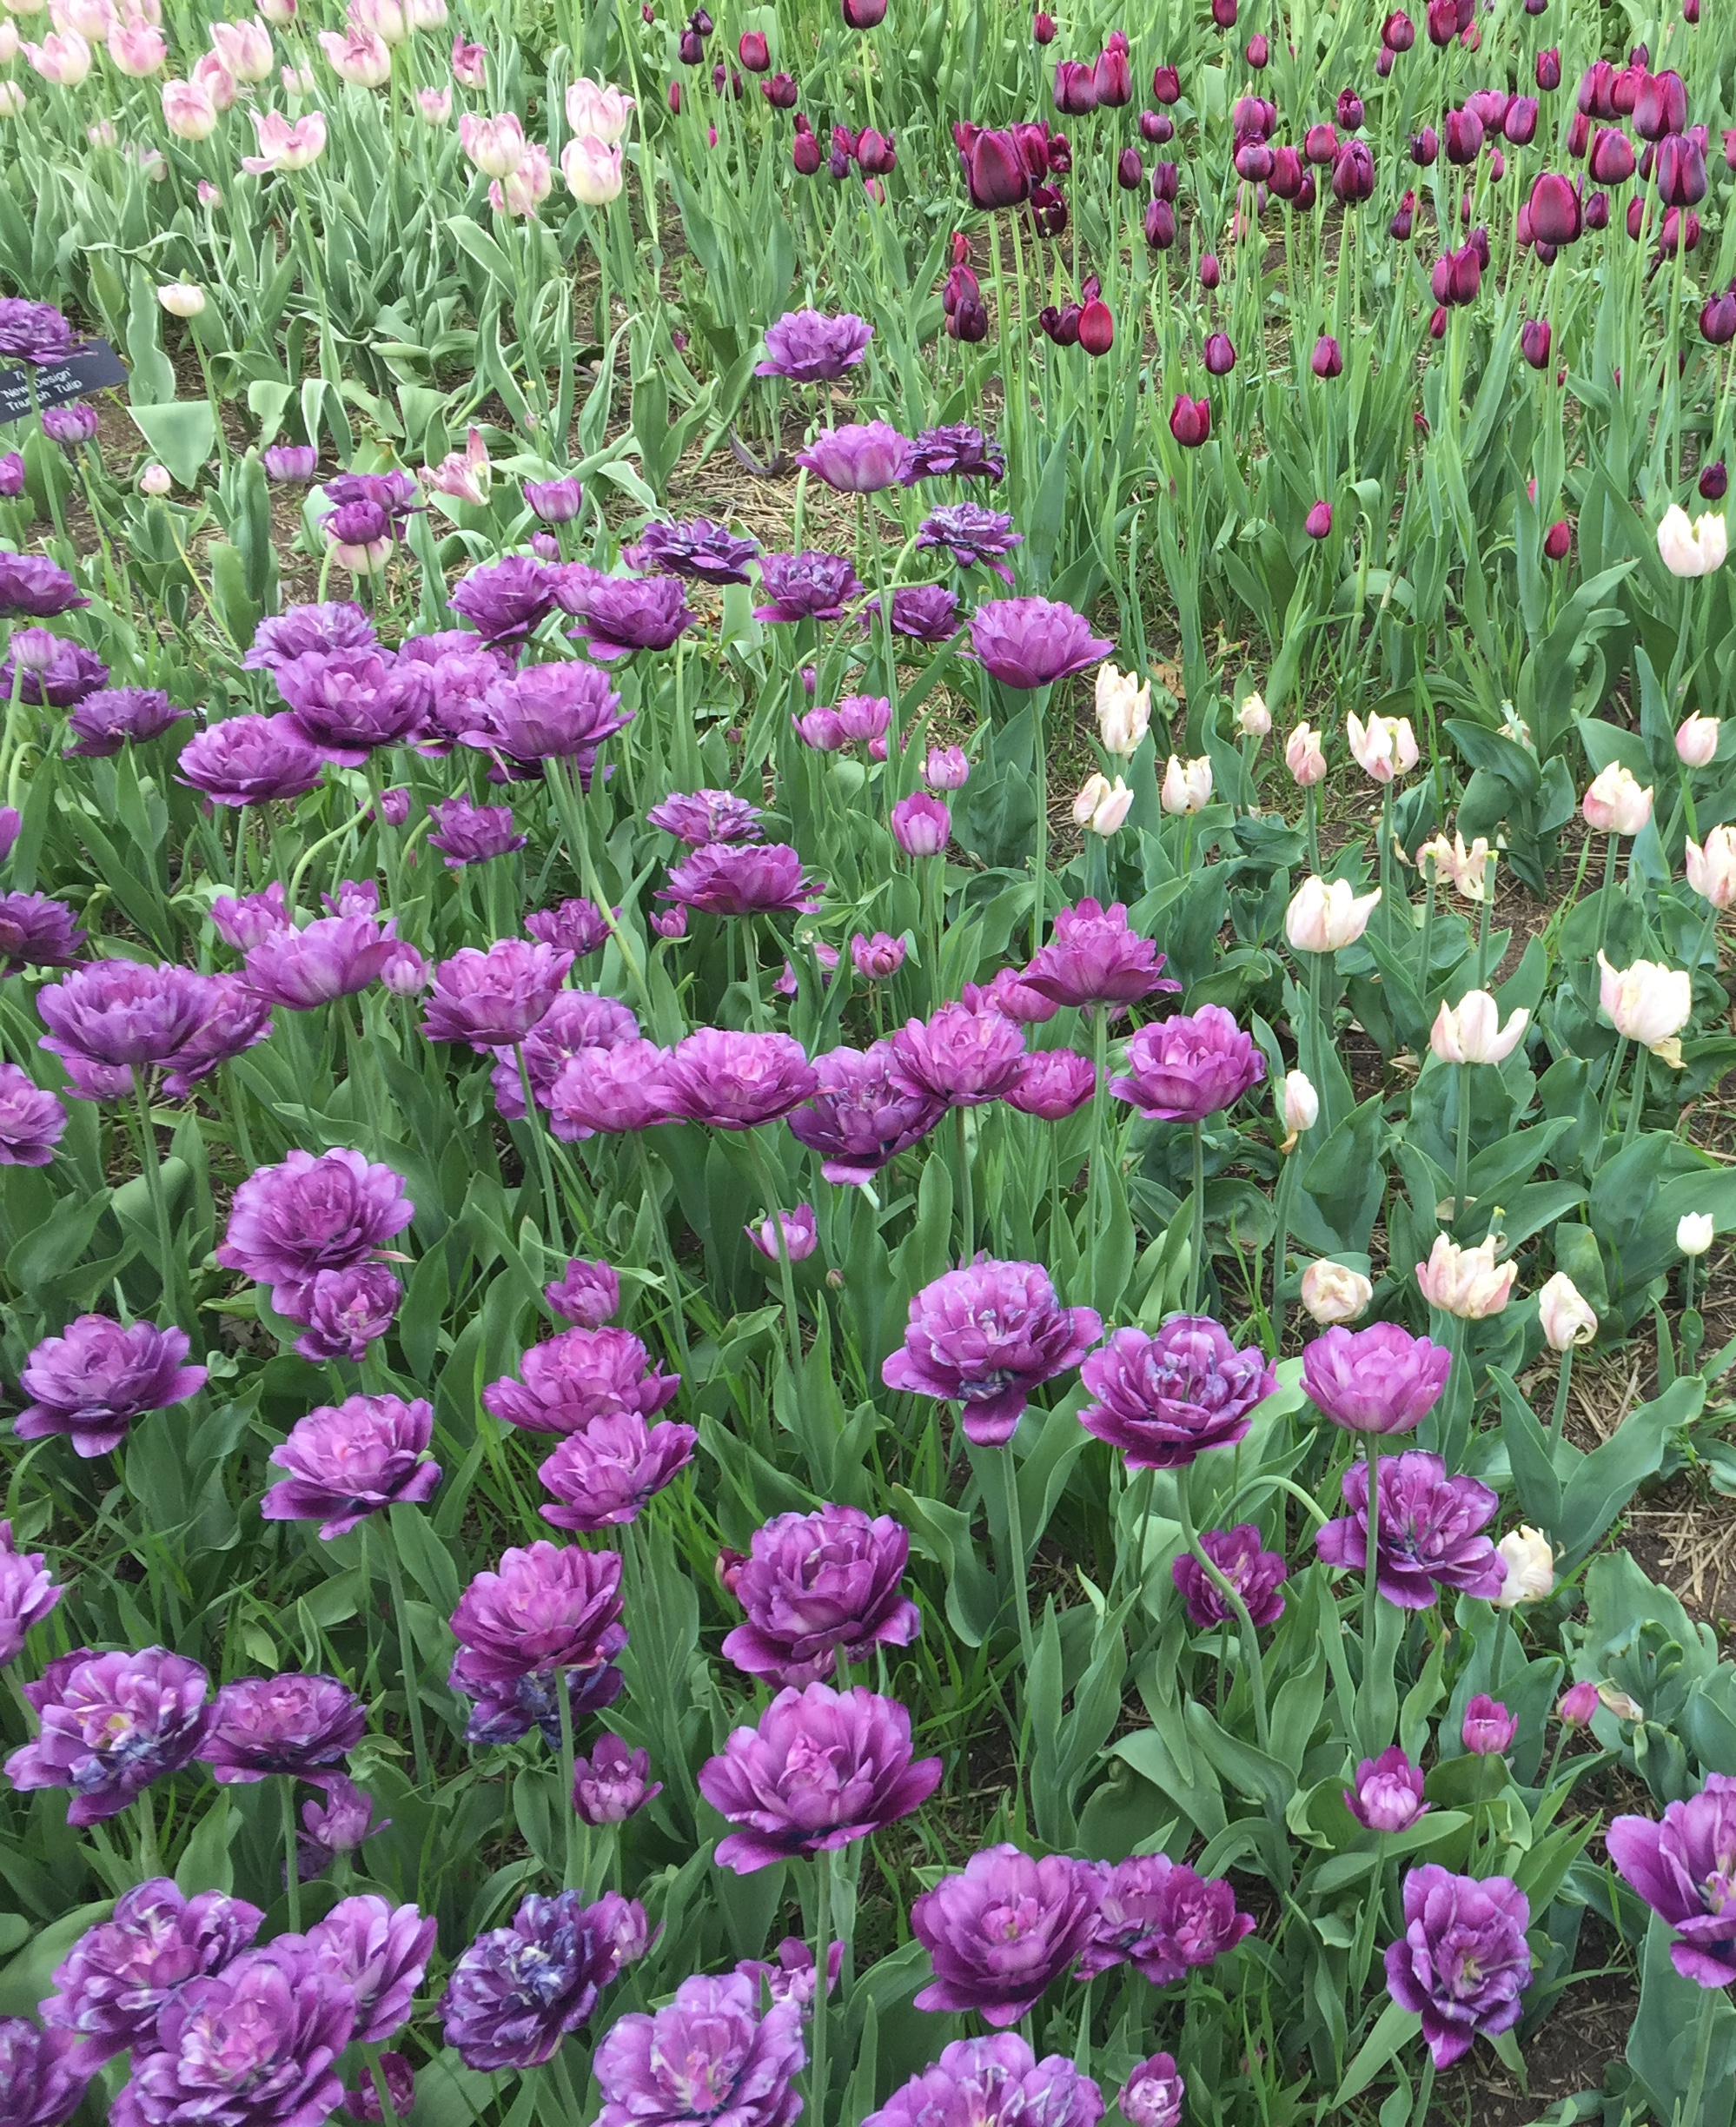 Minnesota Landscape Arboretum Tulips